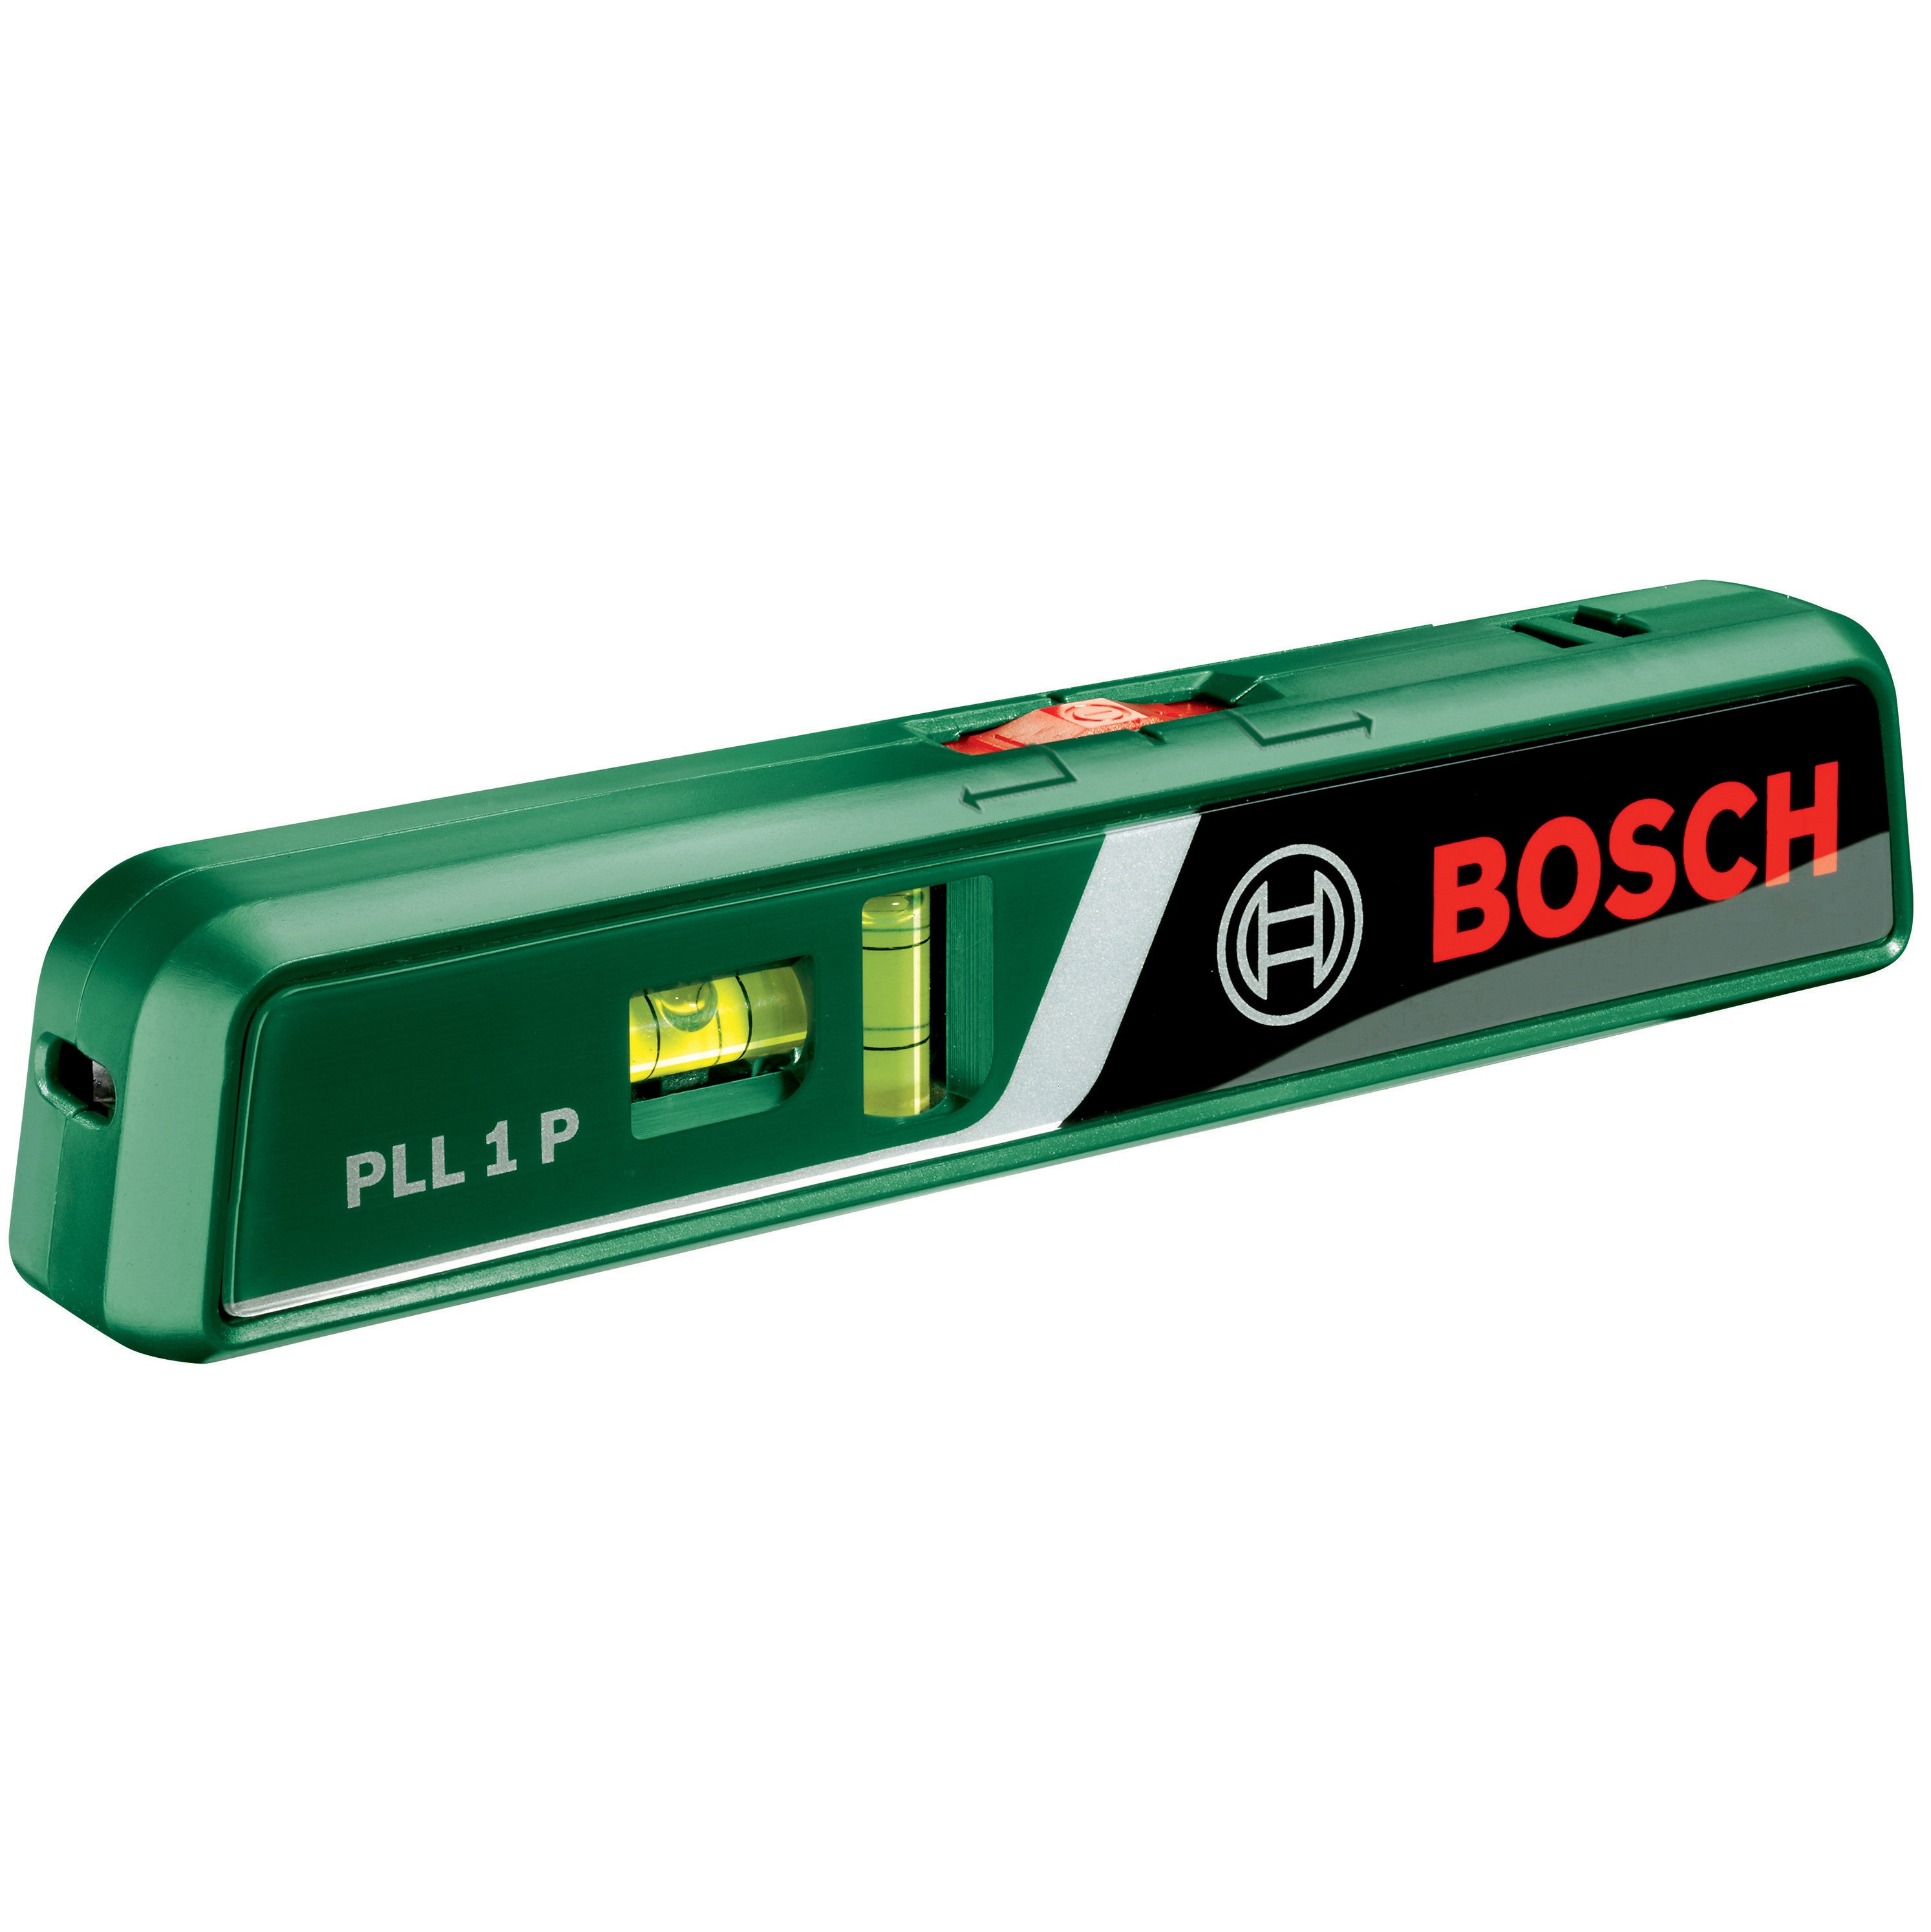 Bosch-v livella laser pll1-p